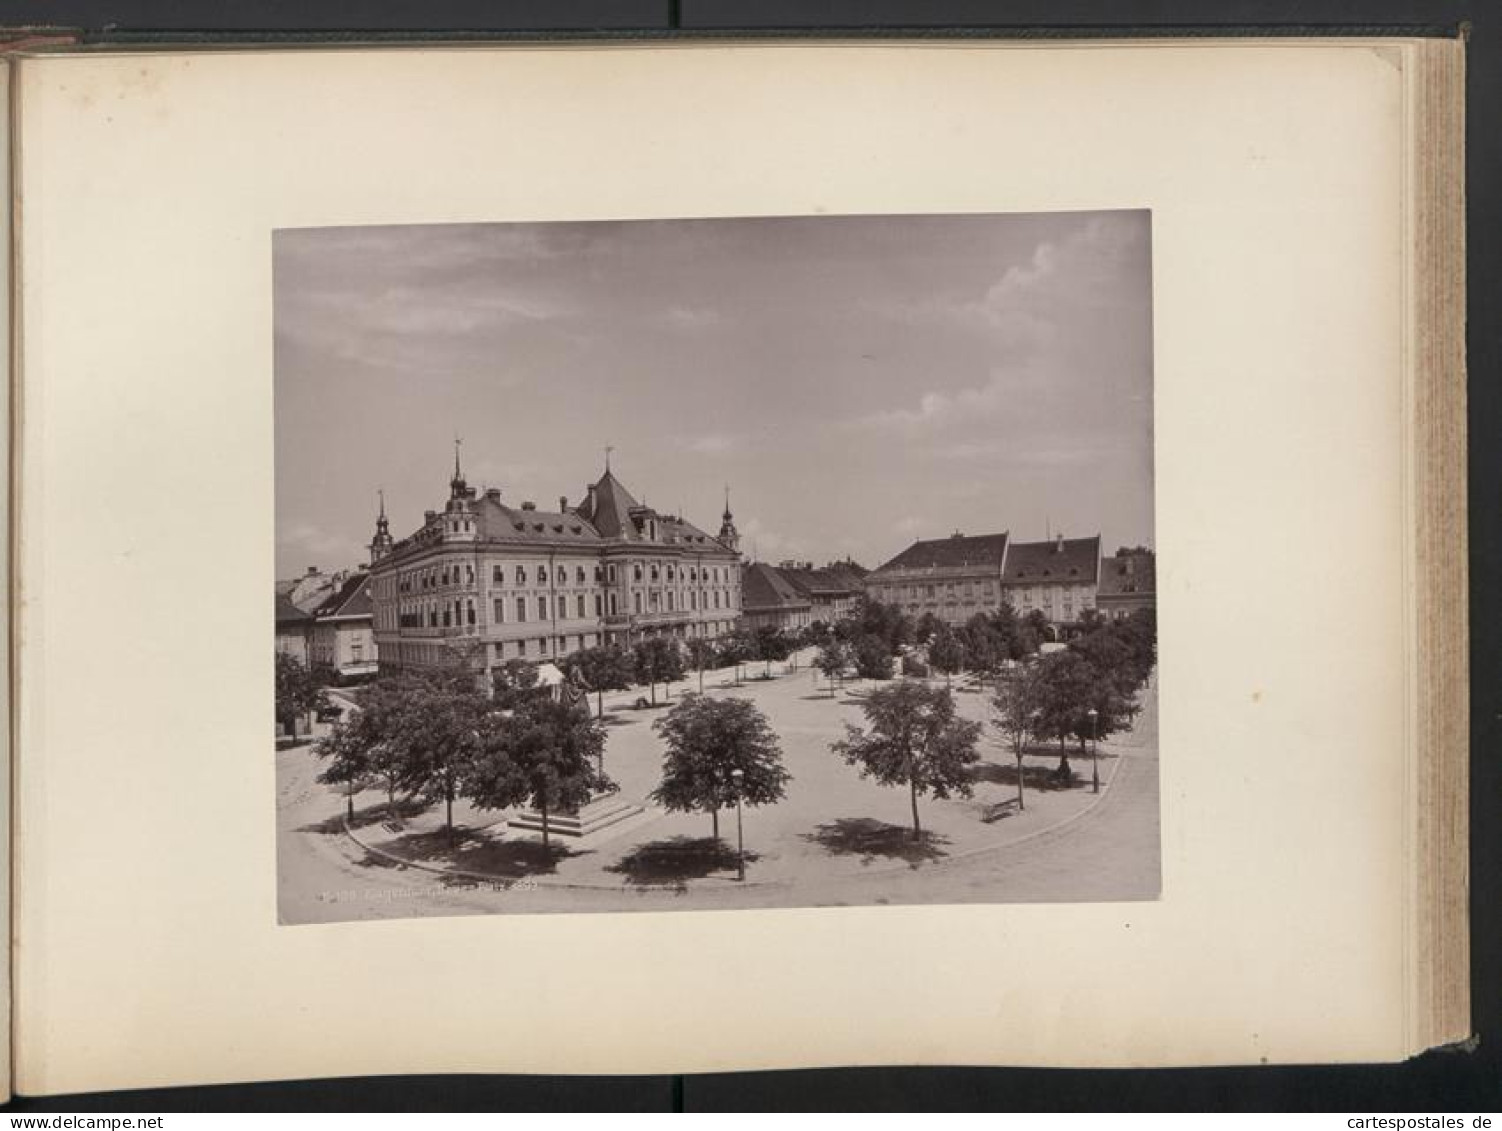 Fotoalbum mit 49 Fotografien, Ansicht Wien, Schönbrunn, Innerer Burgplatz, Rathaus, Stefanskirche, Opernring, Graben 